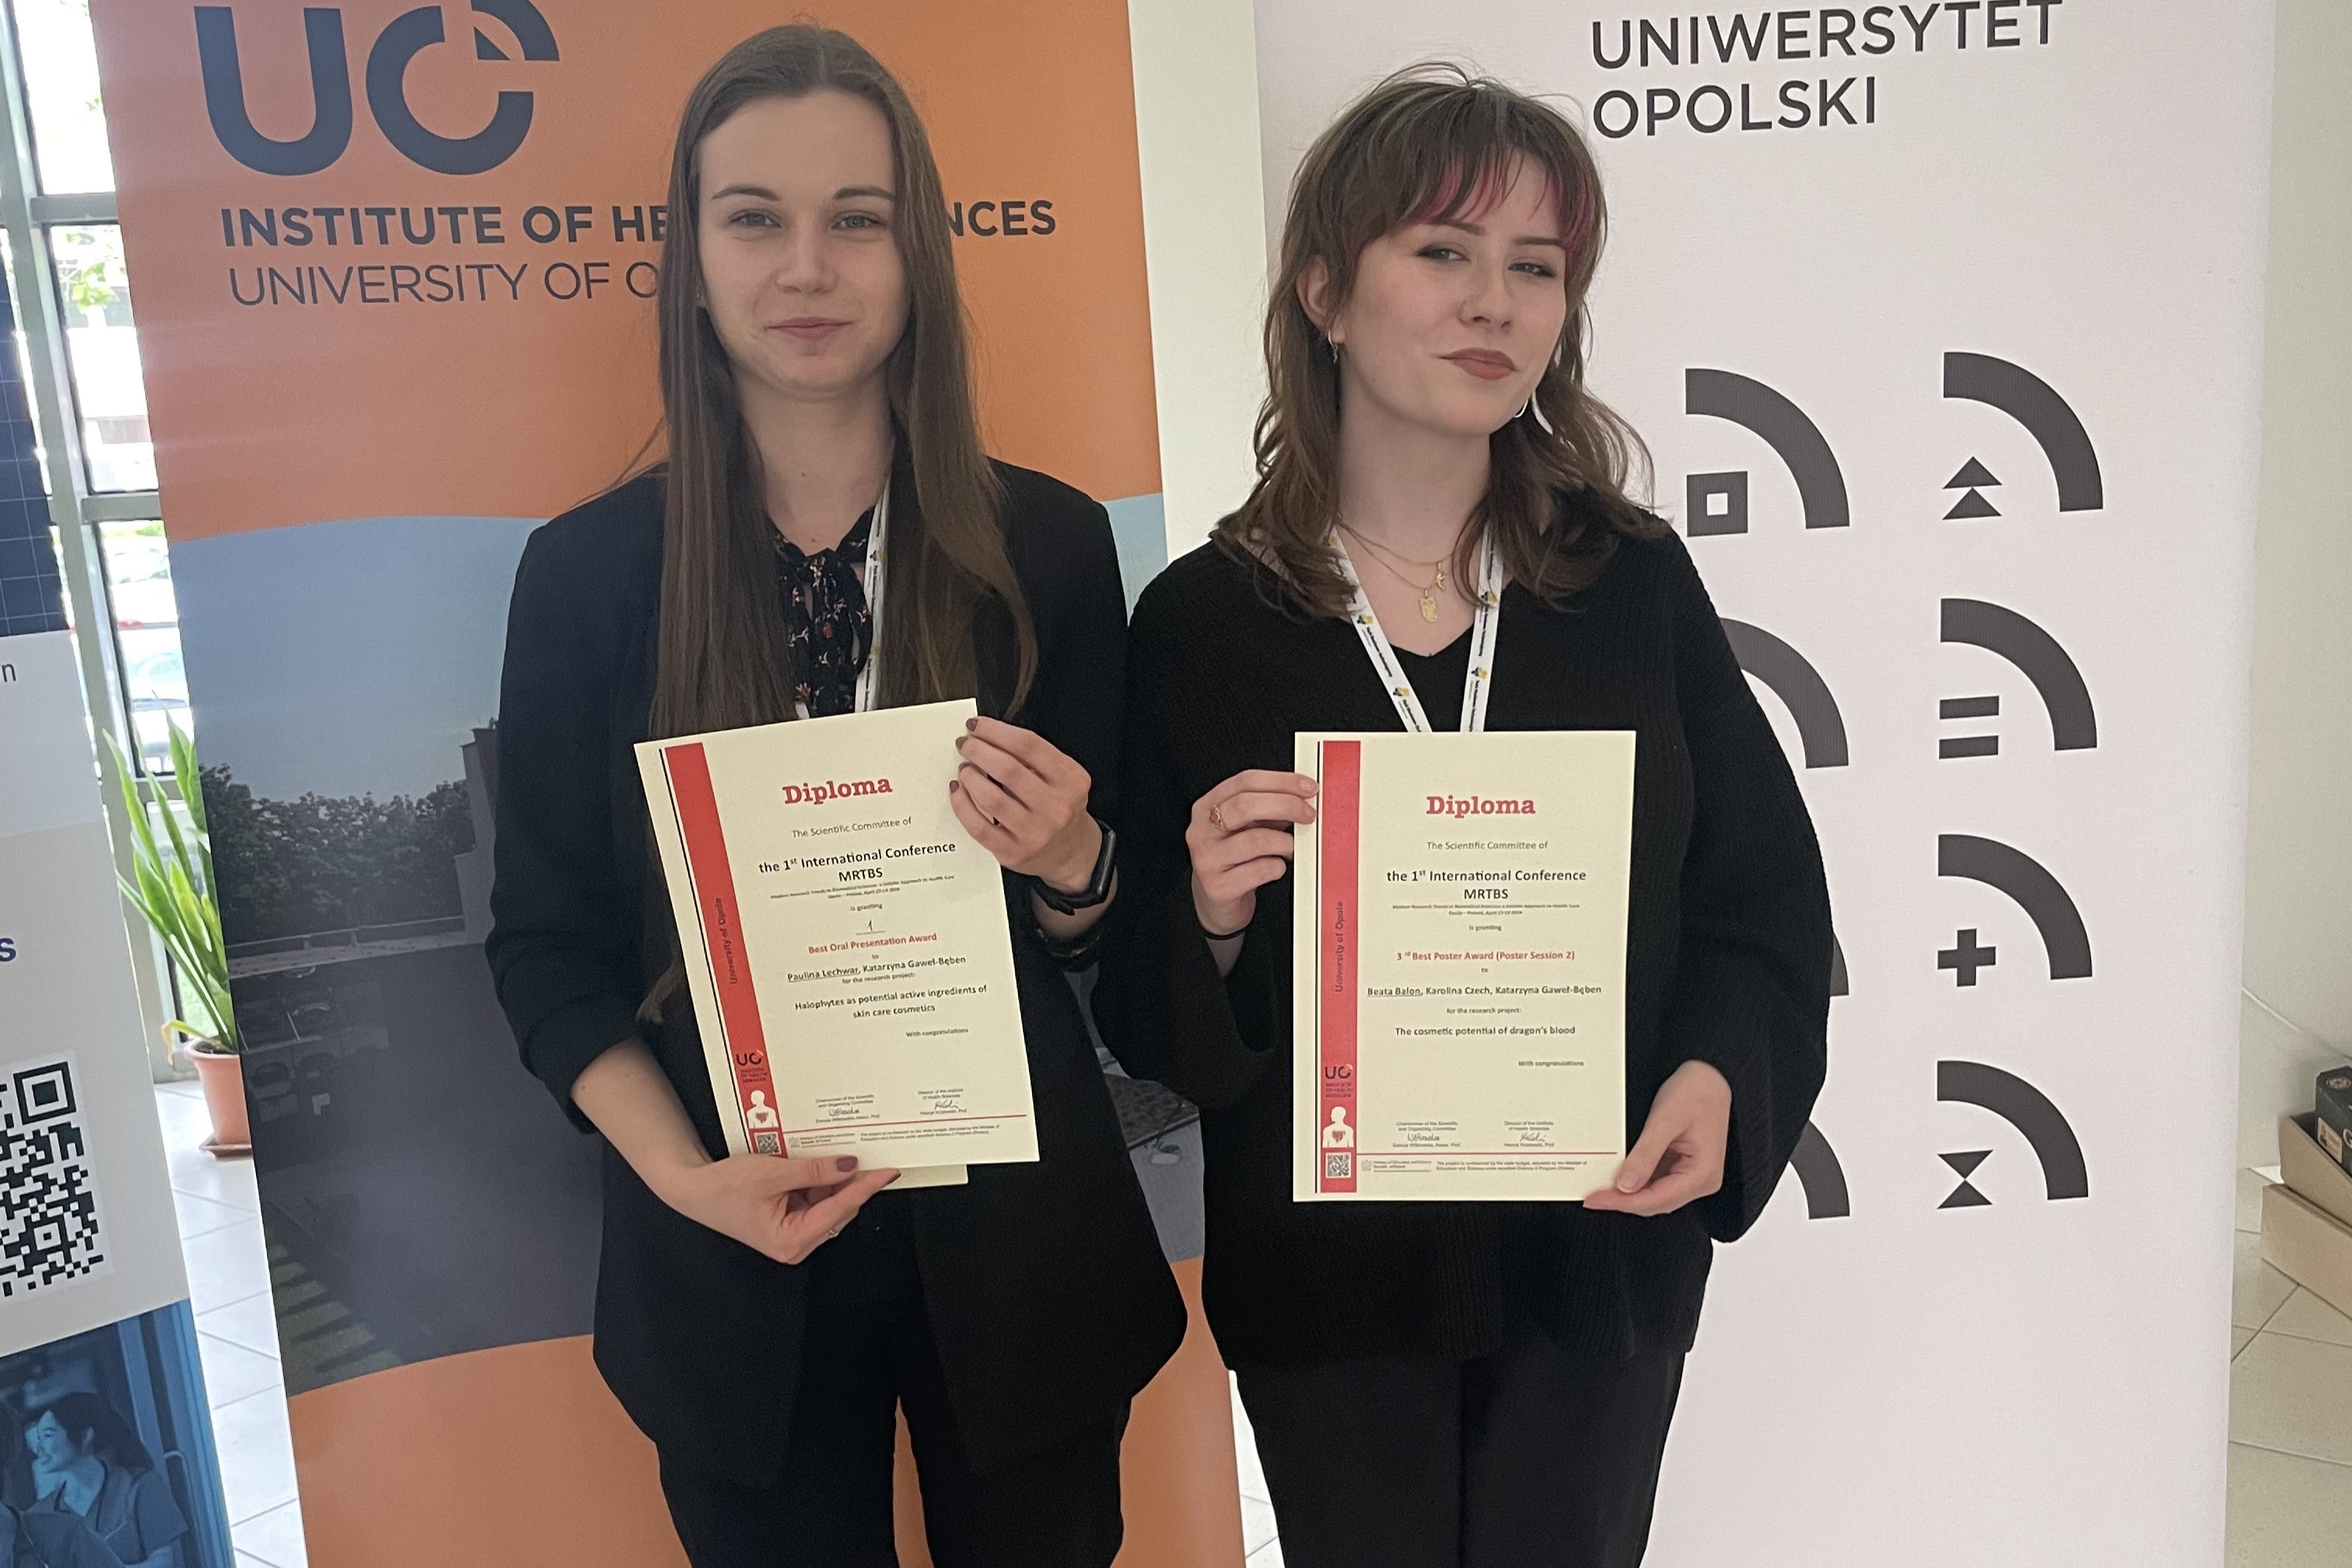 Dwie młode kobiety pozujące do zdjęcia na tle banerów Uniwersytetu Opolskiego. Obie trzymają dyplomy